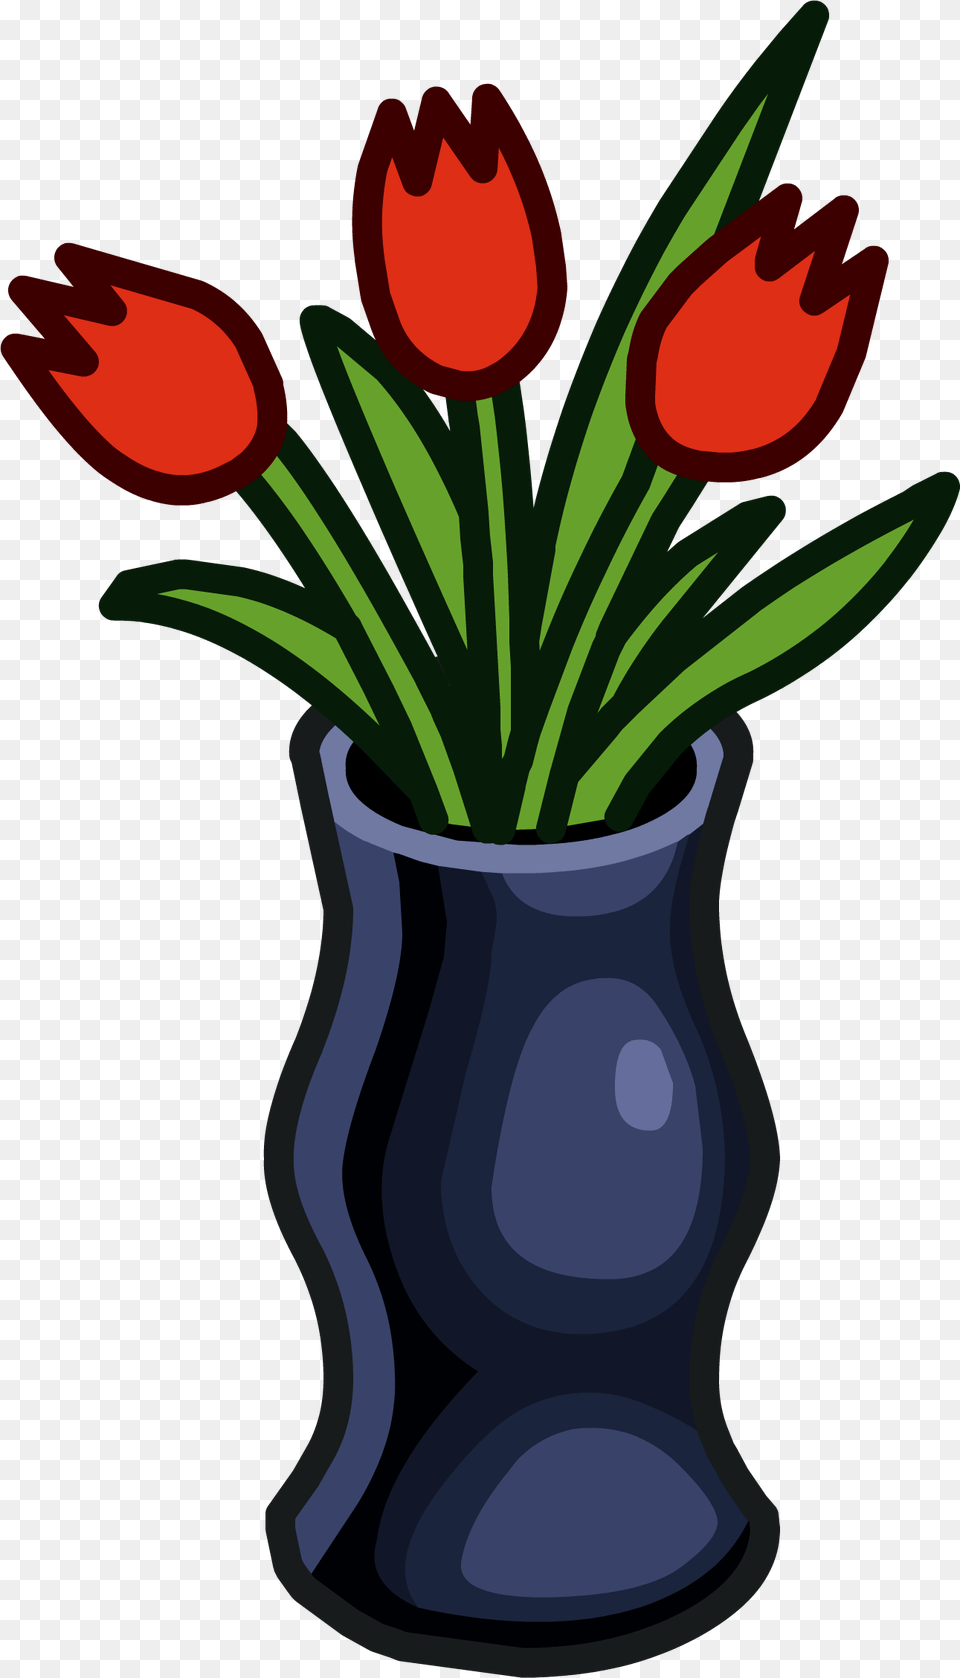 Designer Vase Icon Club Penguin Vase, Jar, Plant, Planter, Potted Plant Free Png Download